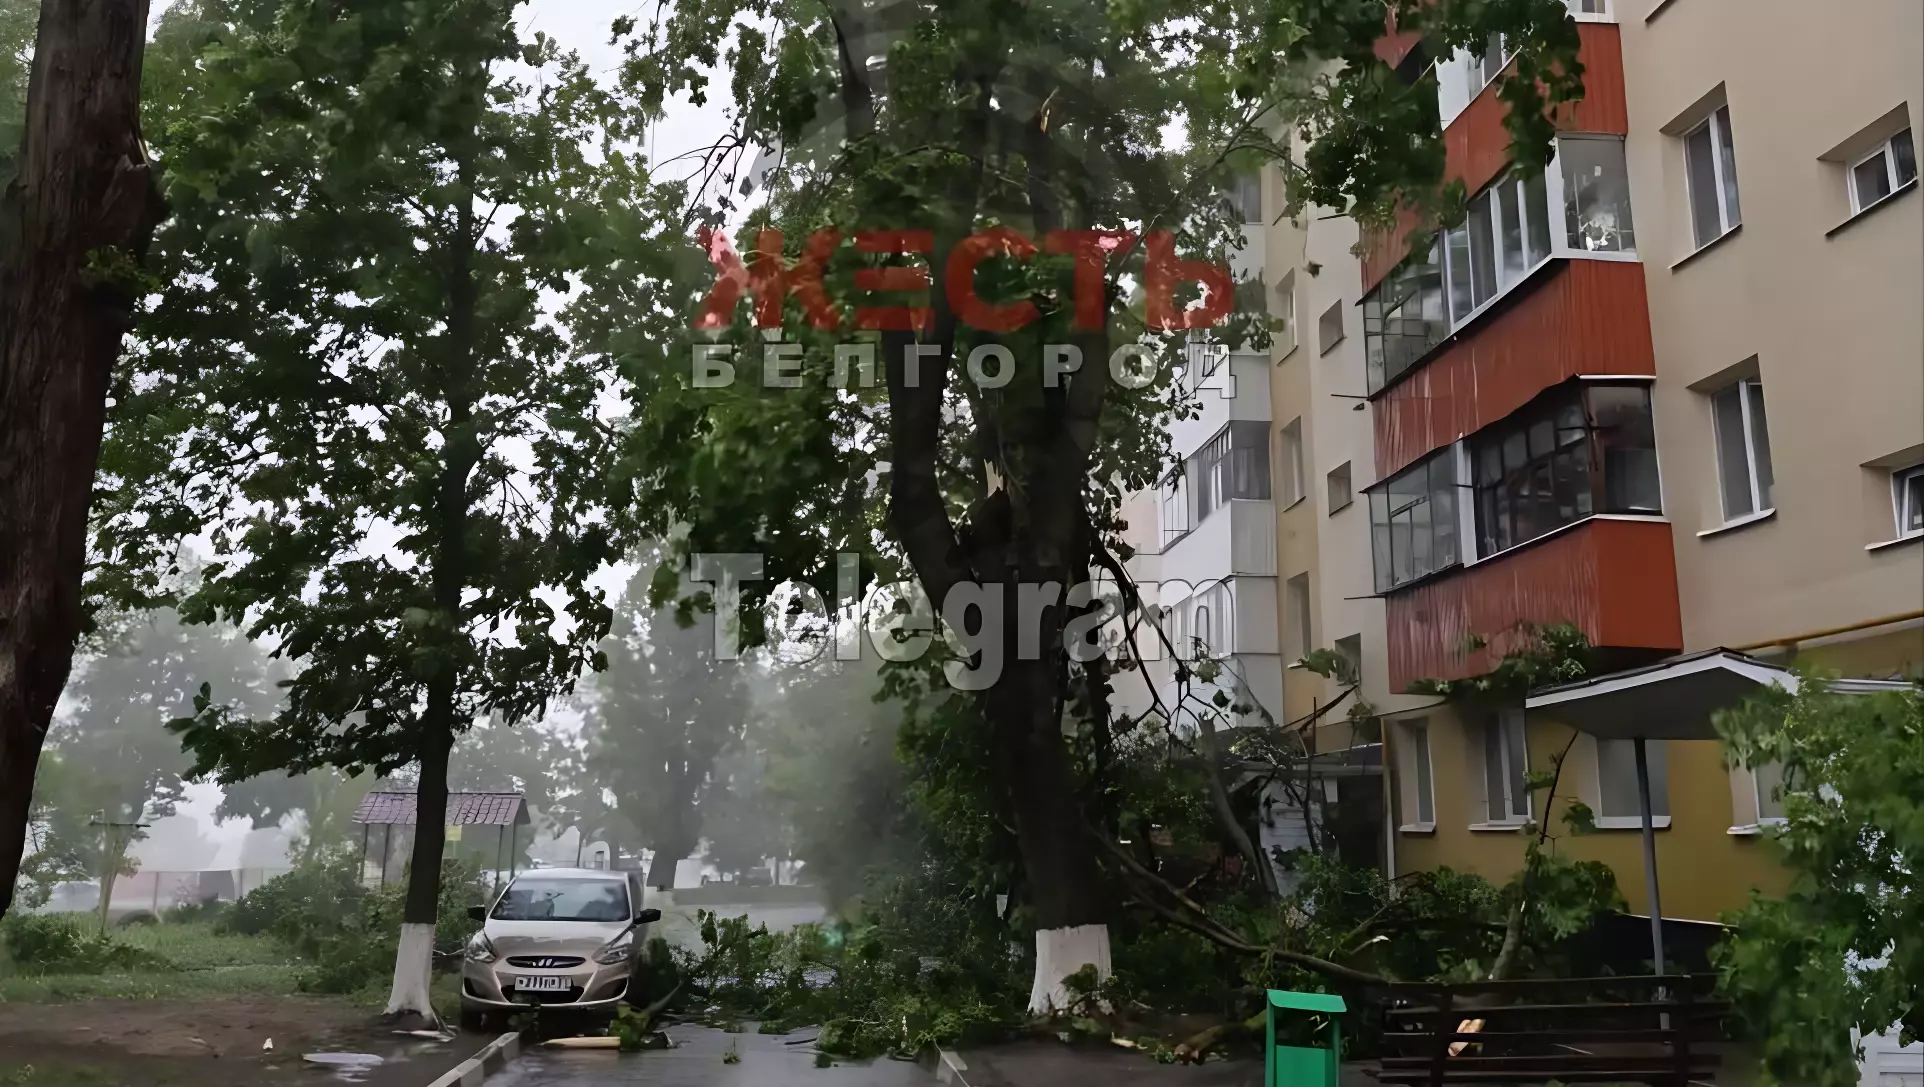 Последствия сильного ветра в Белгороде